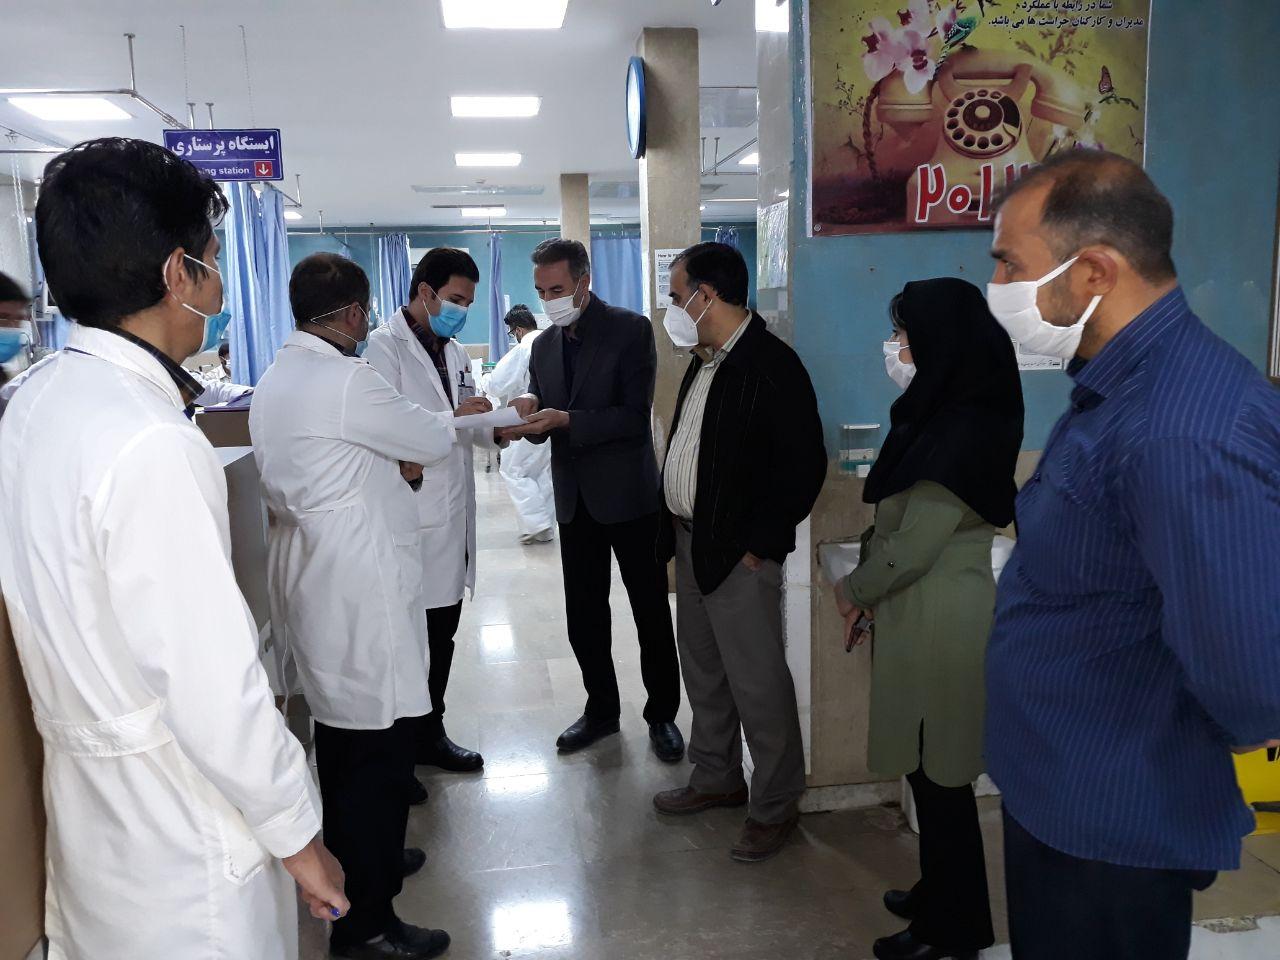 بازدید سرزده معاون درمان از اورژانس بیمارستان امام علی (ع) بجنورد